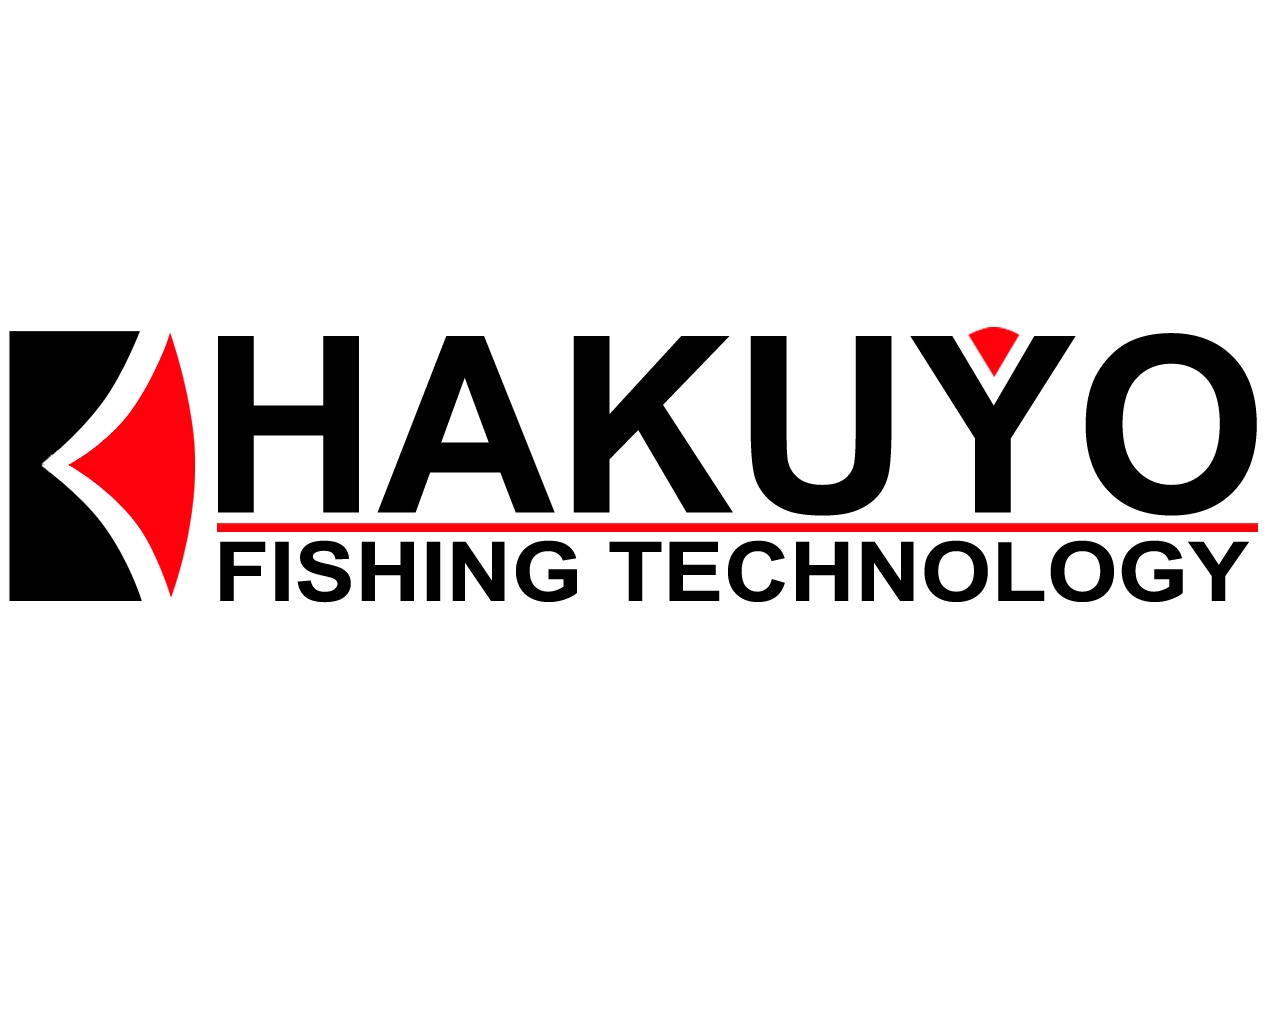 Hakuyo